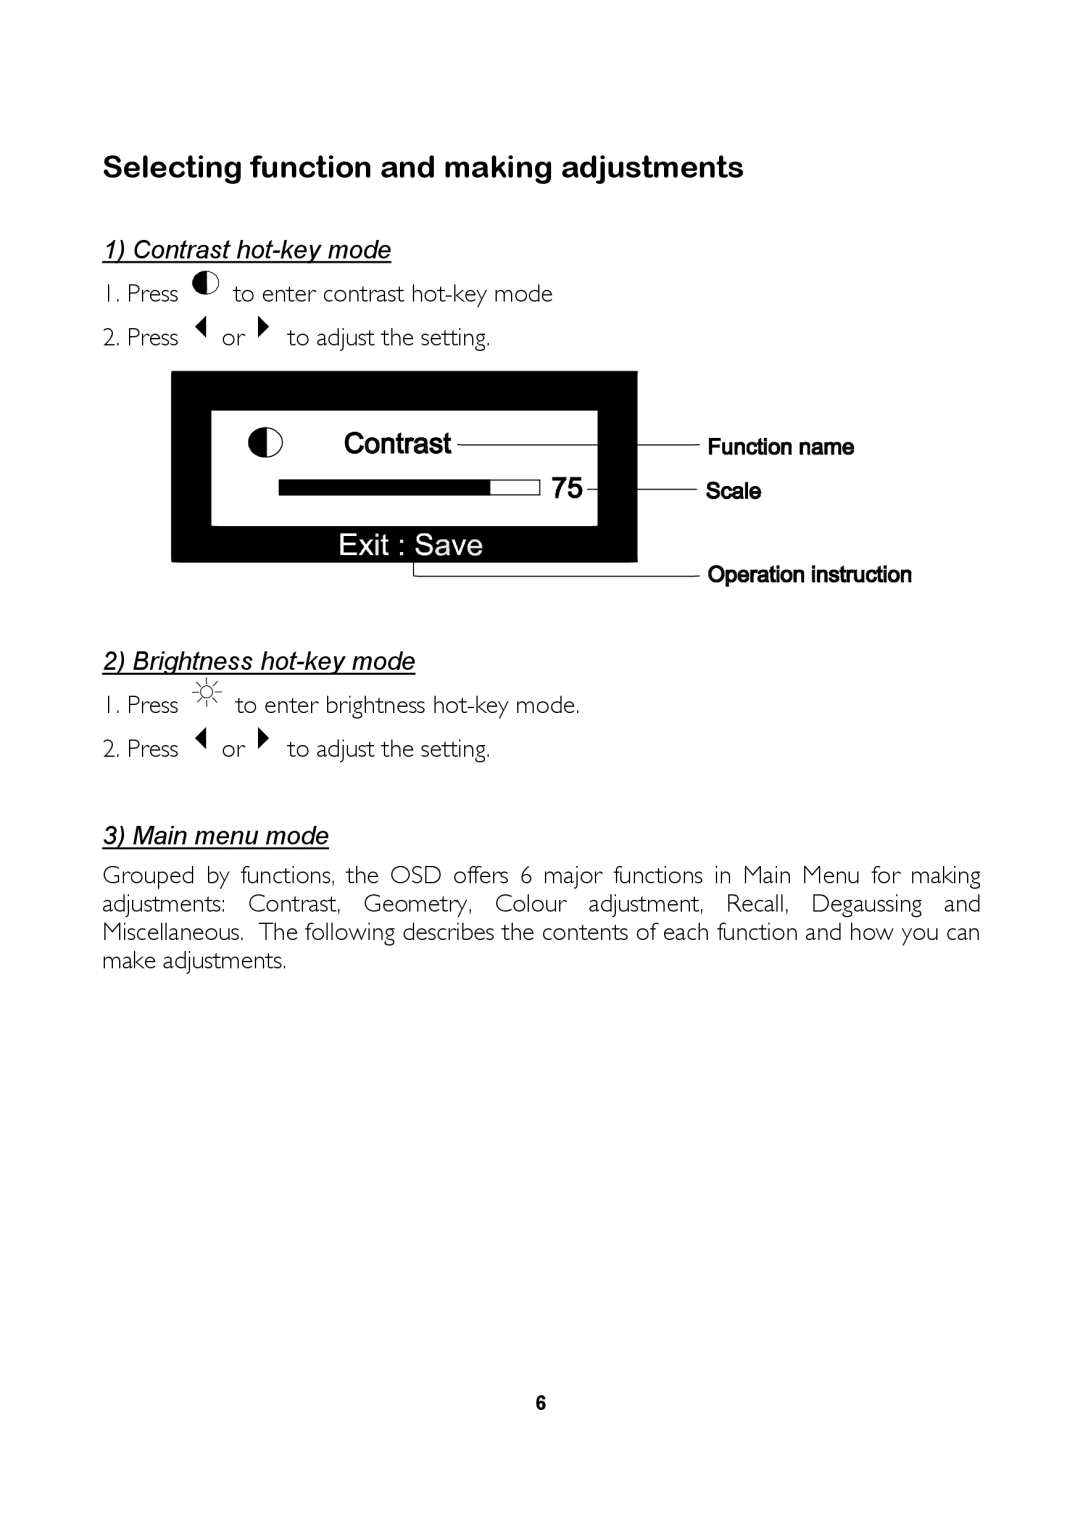 Mitsubishi Electronics 1786FD user manual Selecting function and making adjustments, Main menu mode 